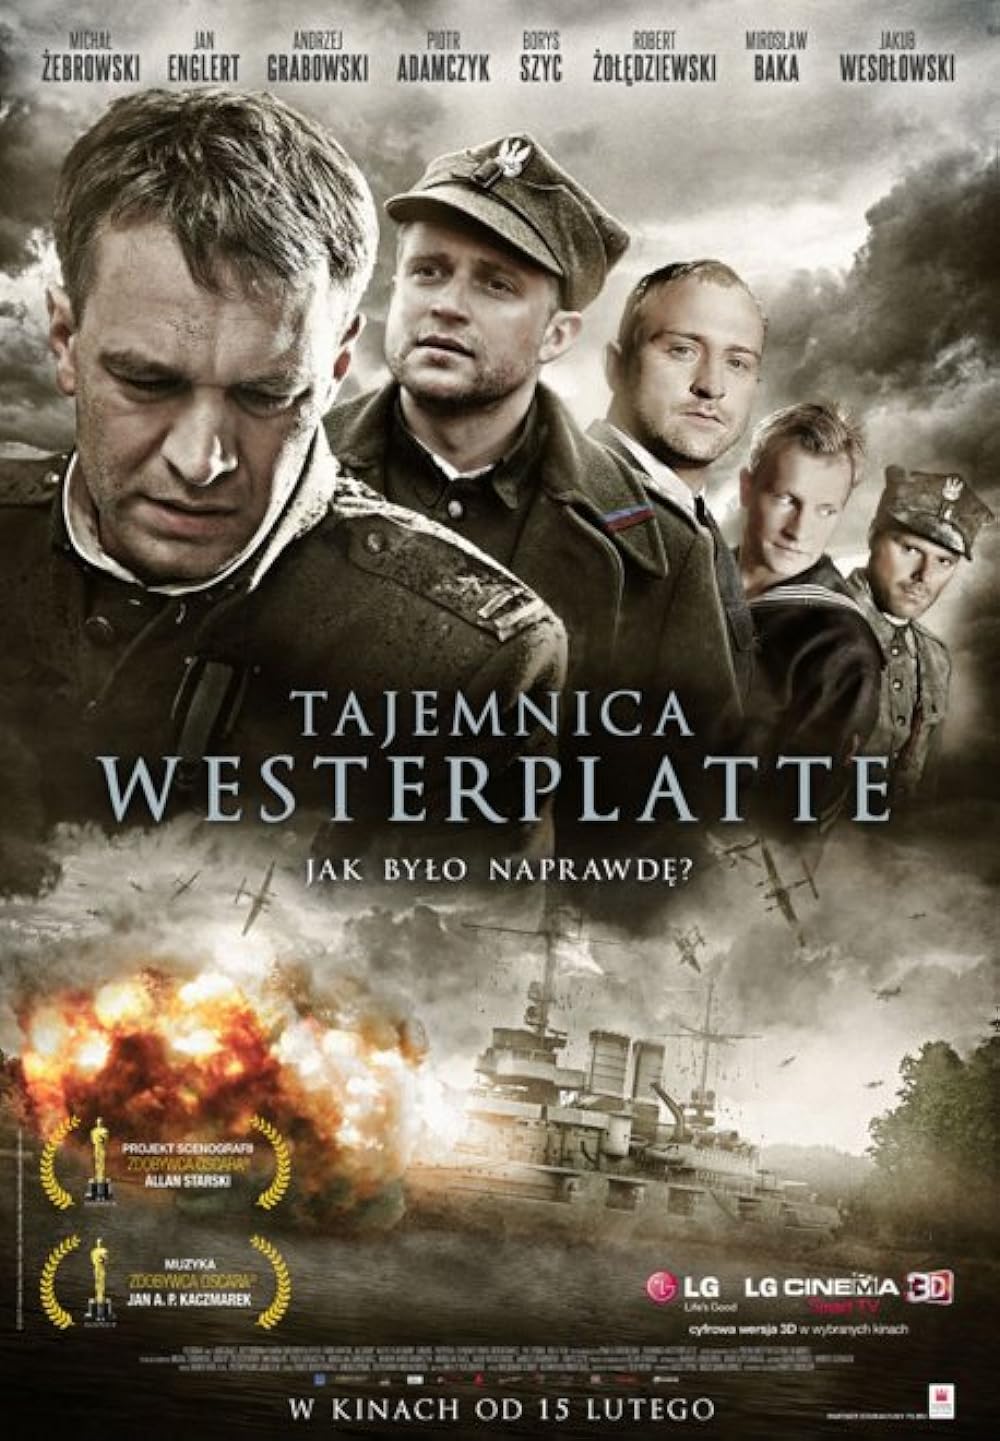 Westerplatte csatája